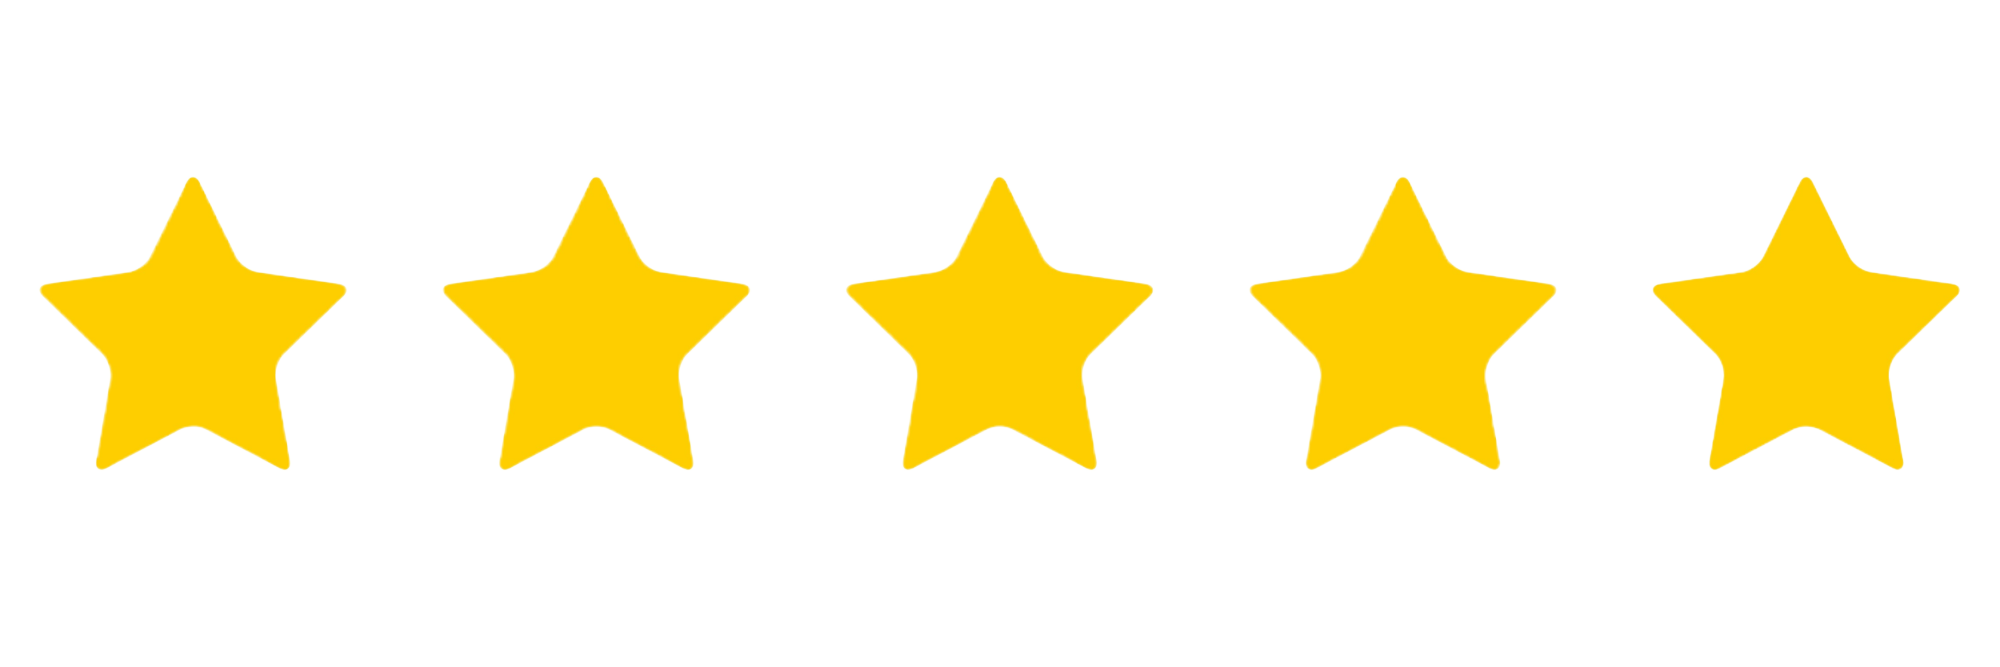 Review van 5 sterren